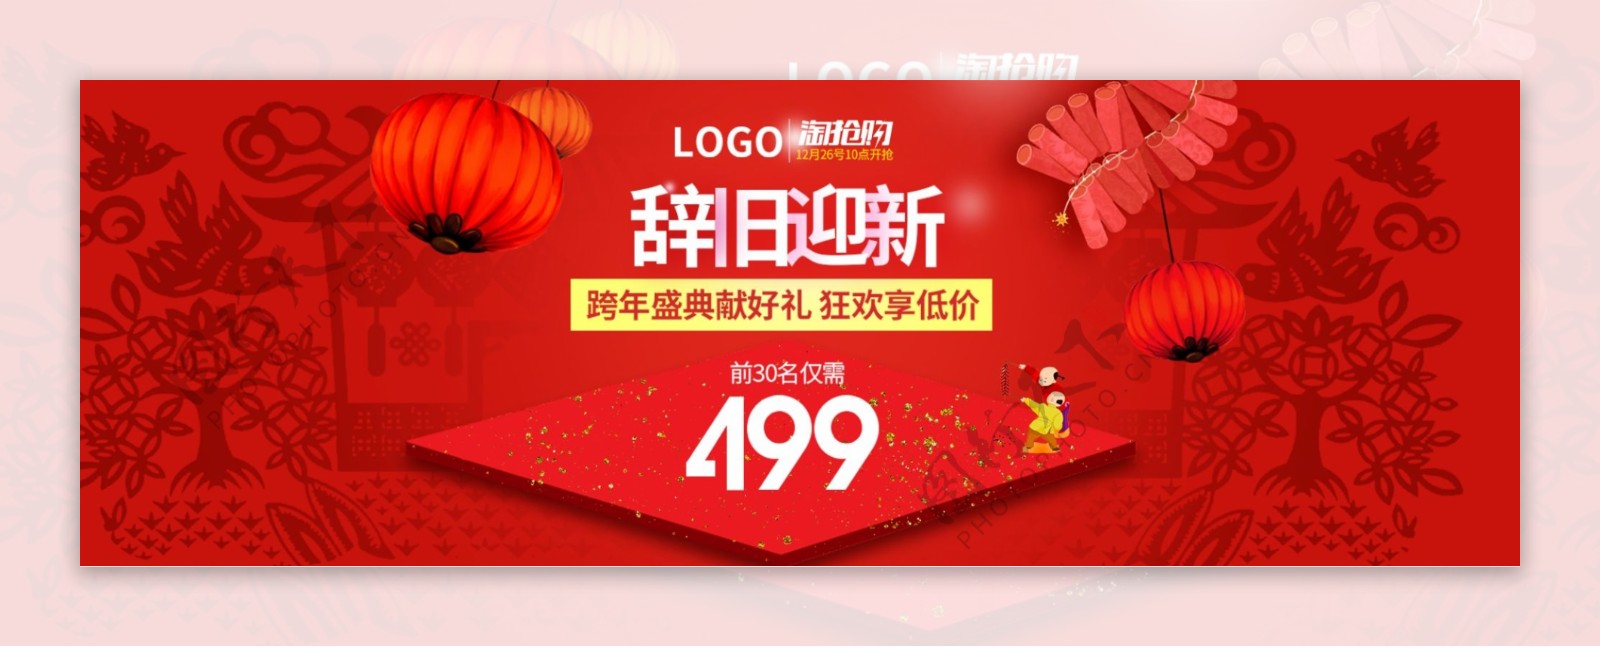 淘宝元旦春节促销宣传海报